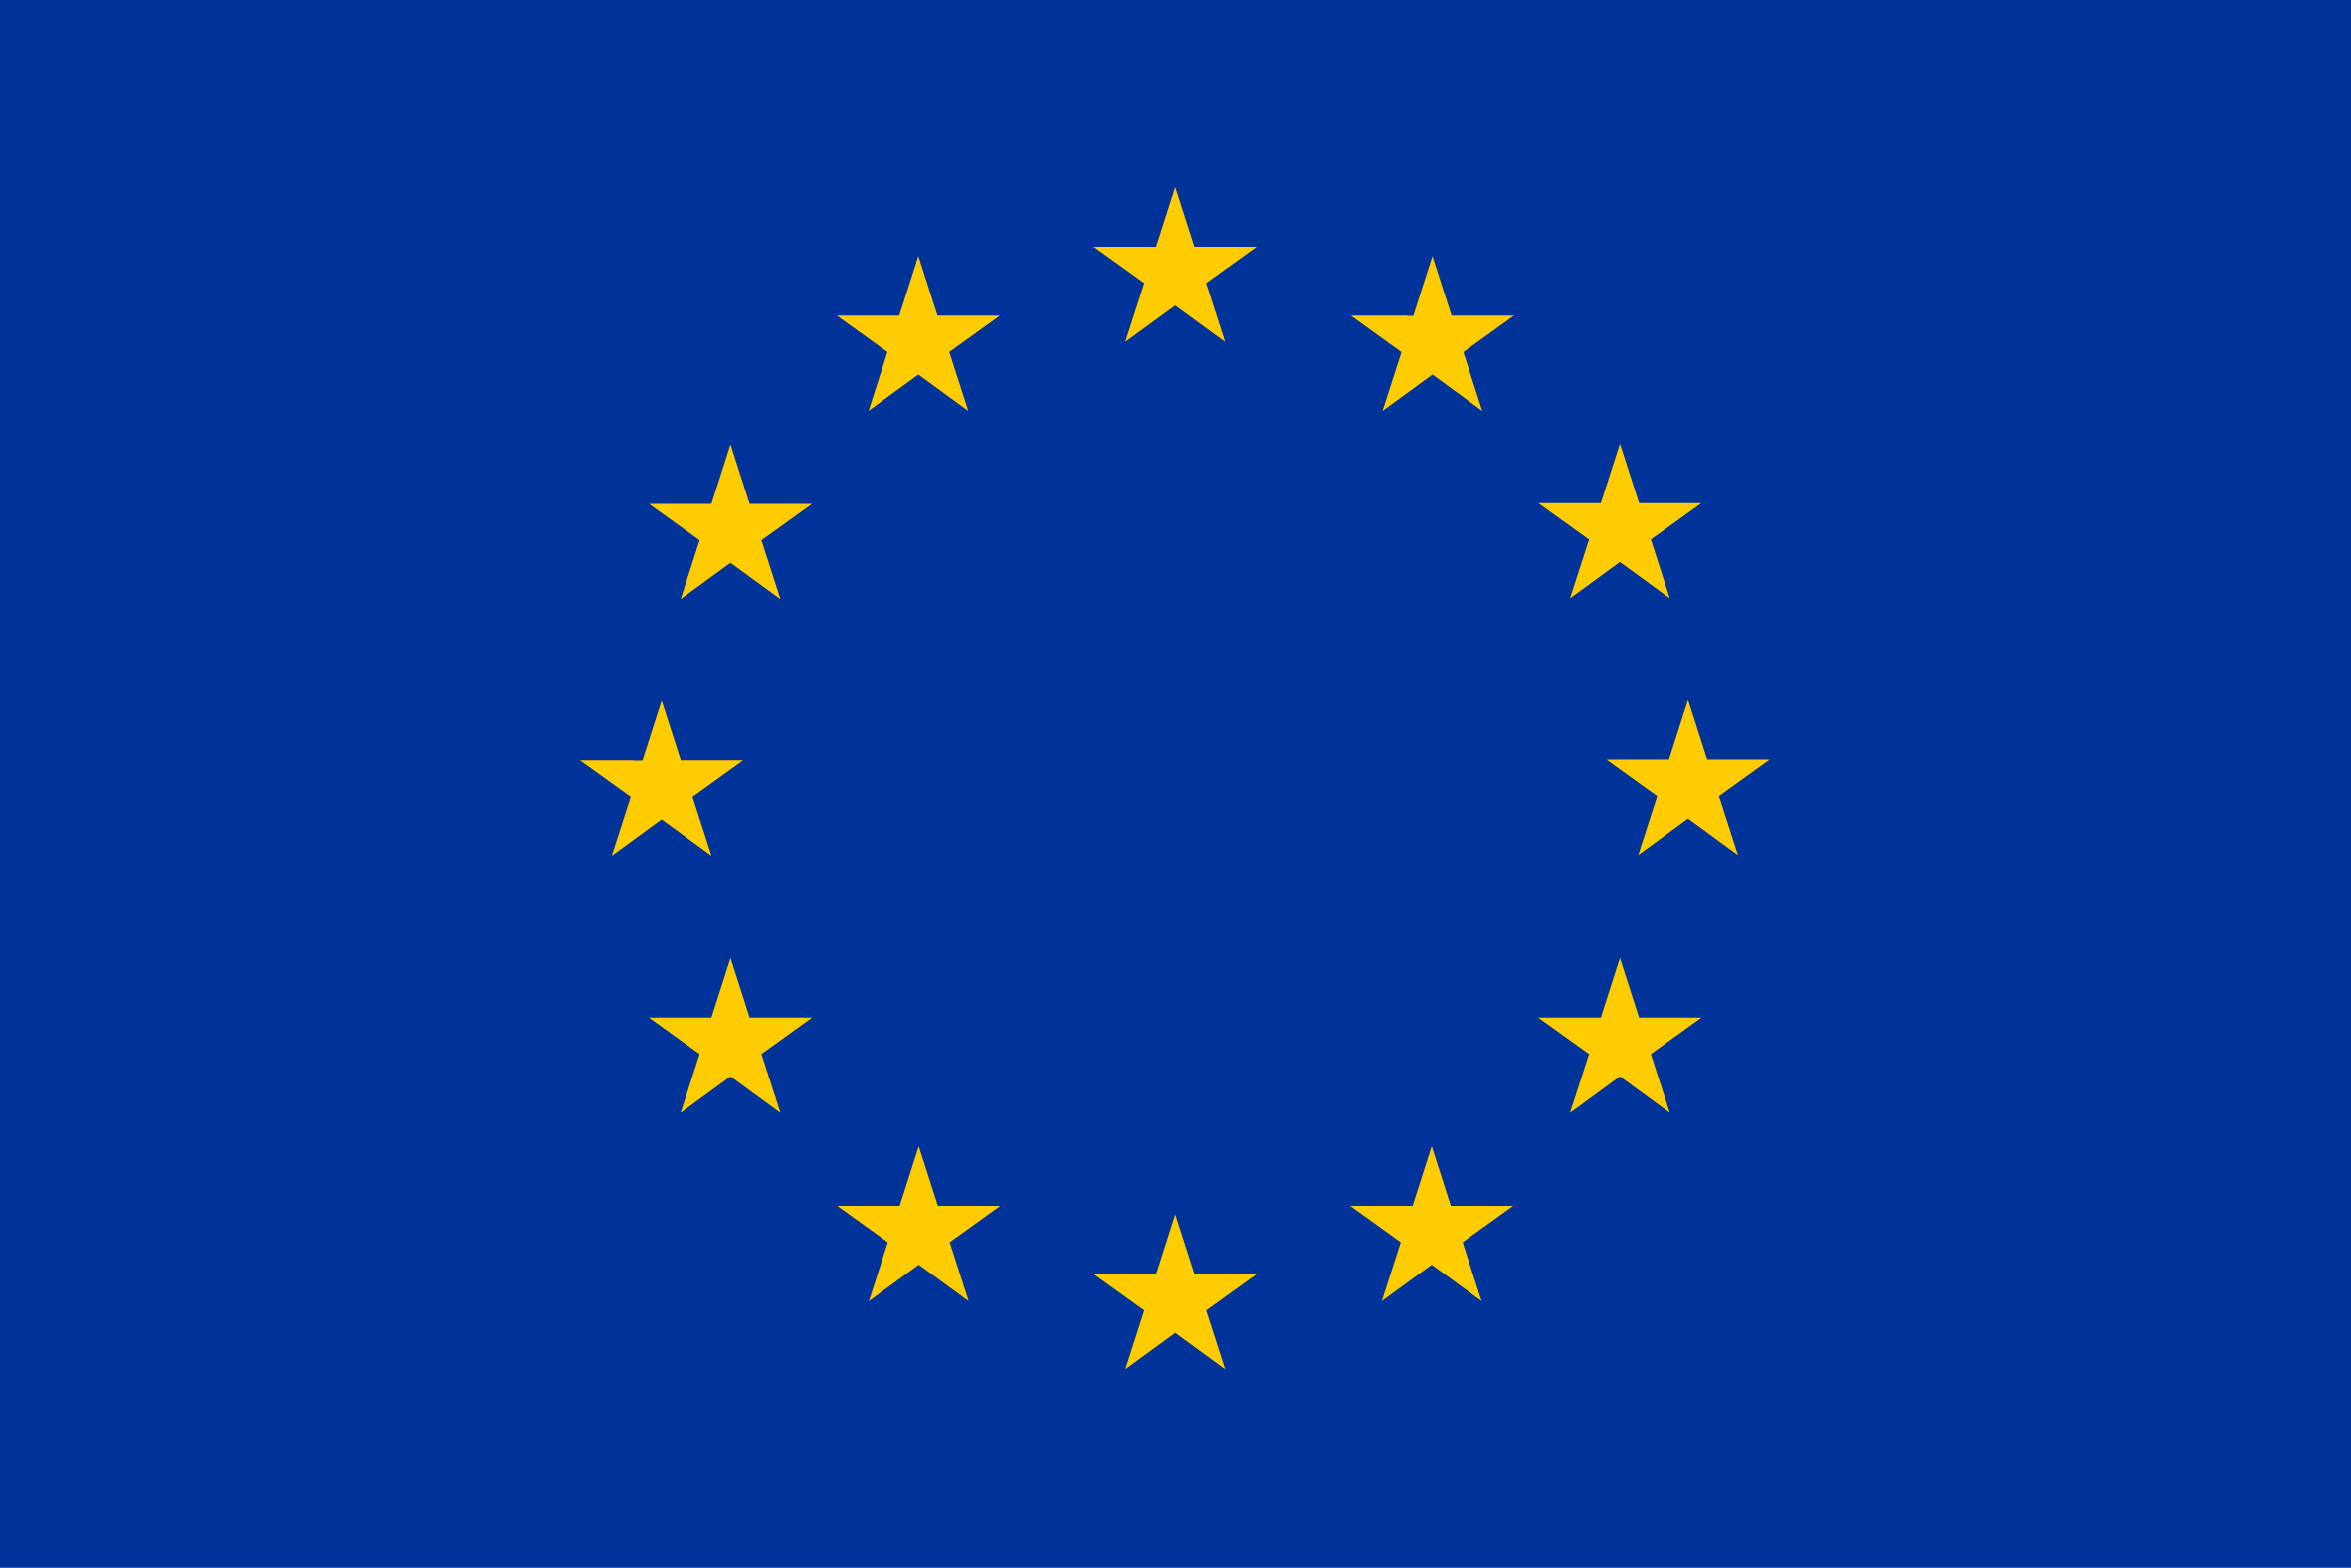 eu_flag.jpg